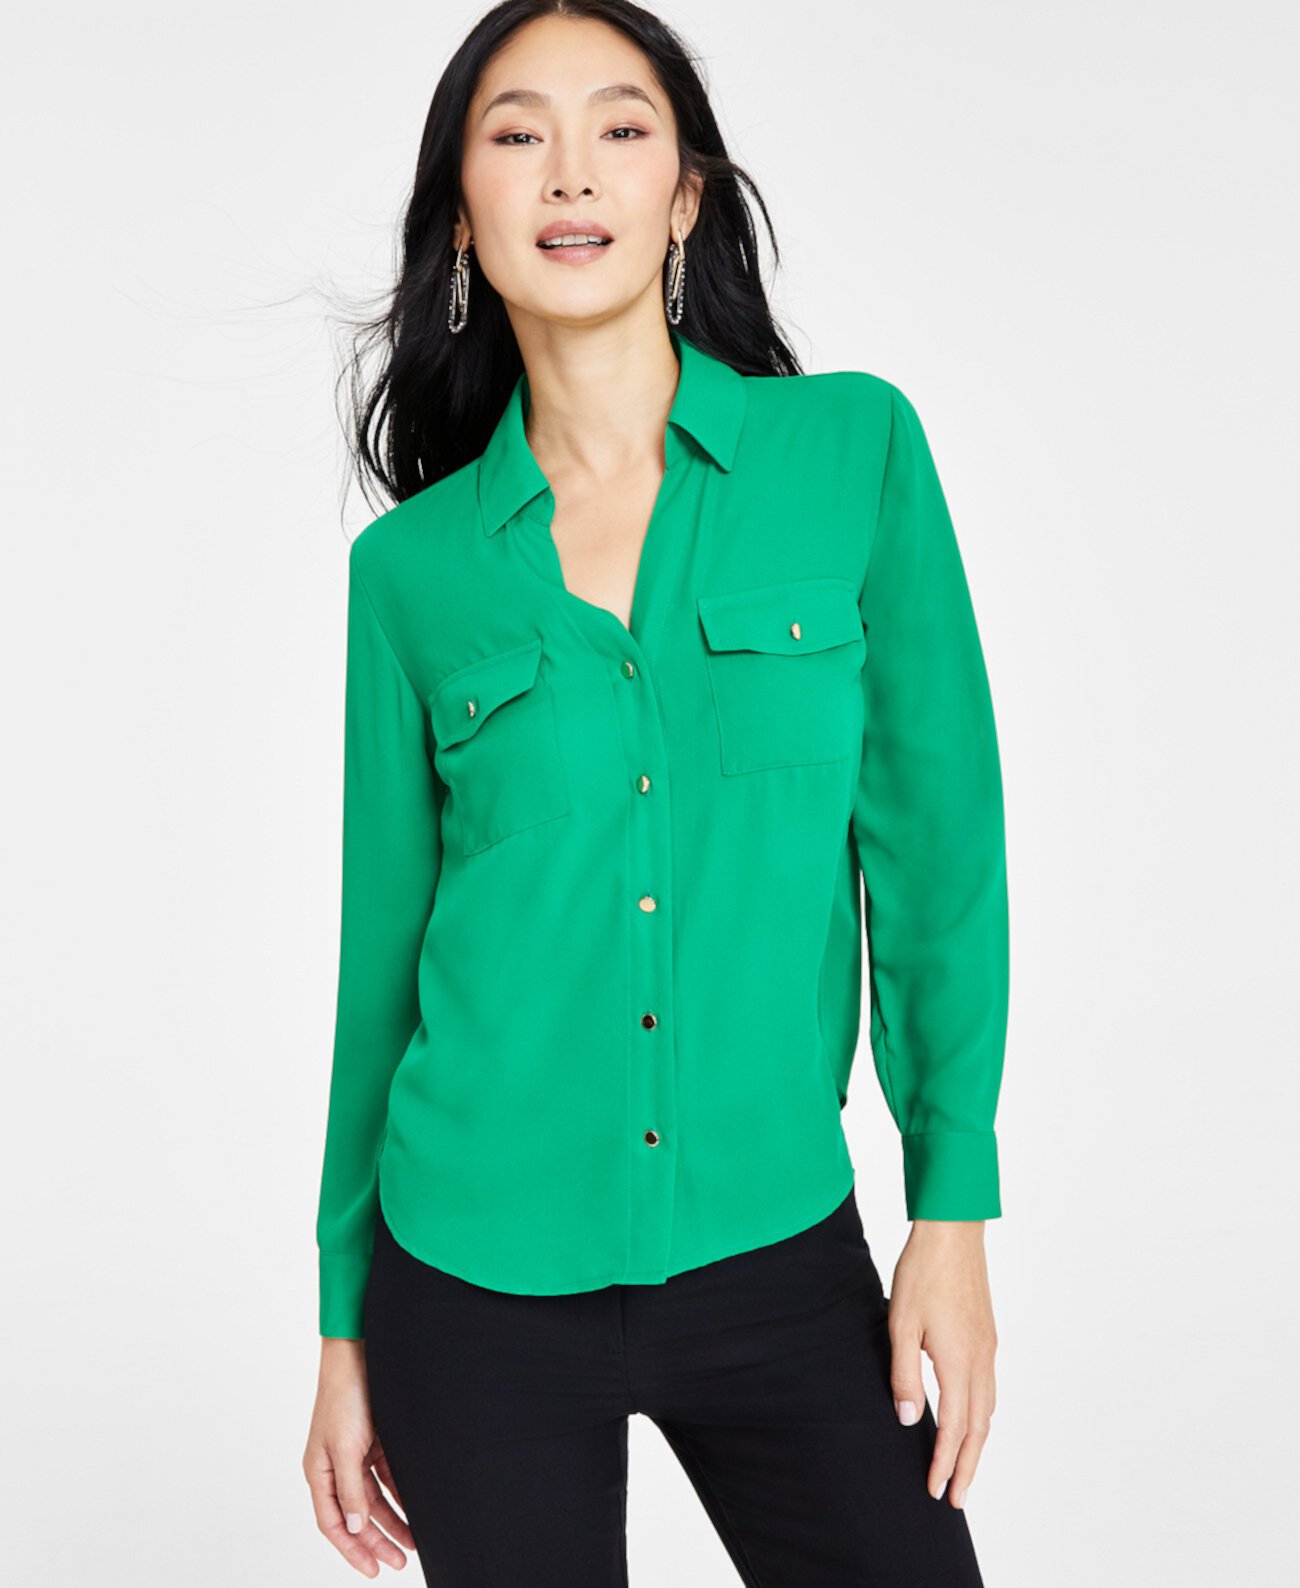 Миниатюрная блузка на пуговицах спереди, созданная для Macy's I.N.C. International Concepts